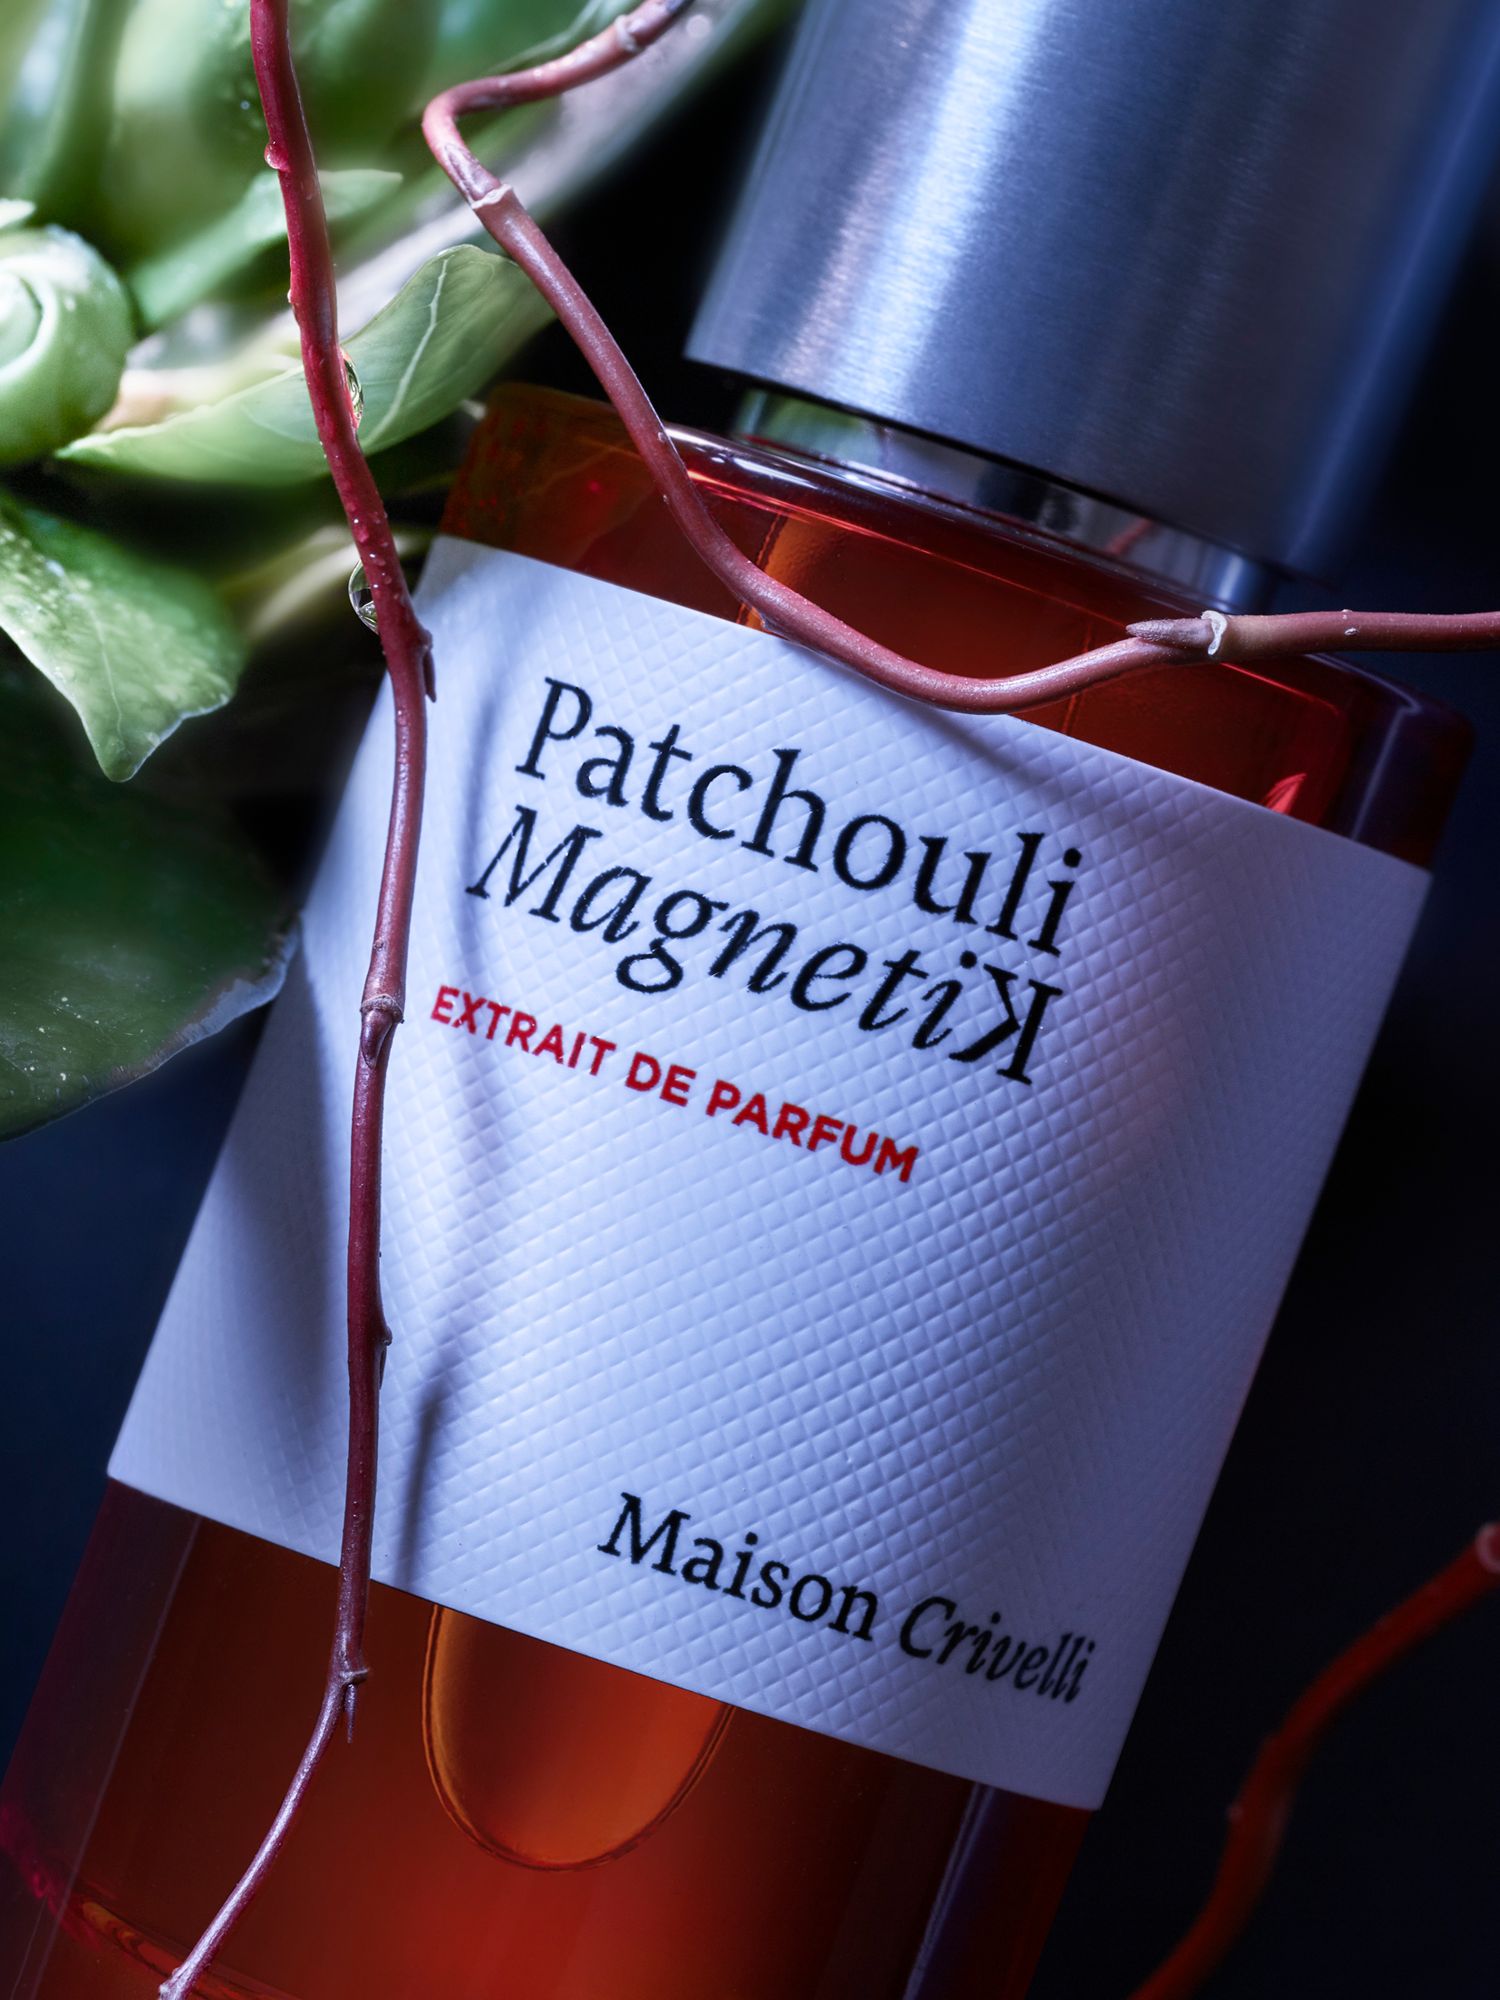 Maison Crivelli Patchouli Magnetik Extrait de Parfum, 50ml at John Lewis  & Partners